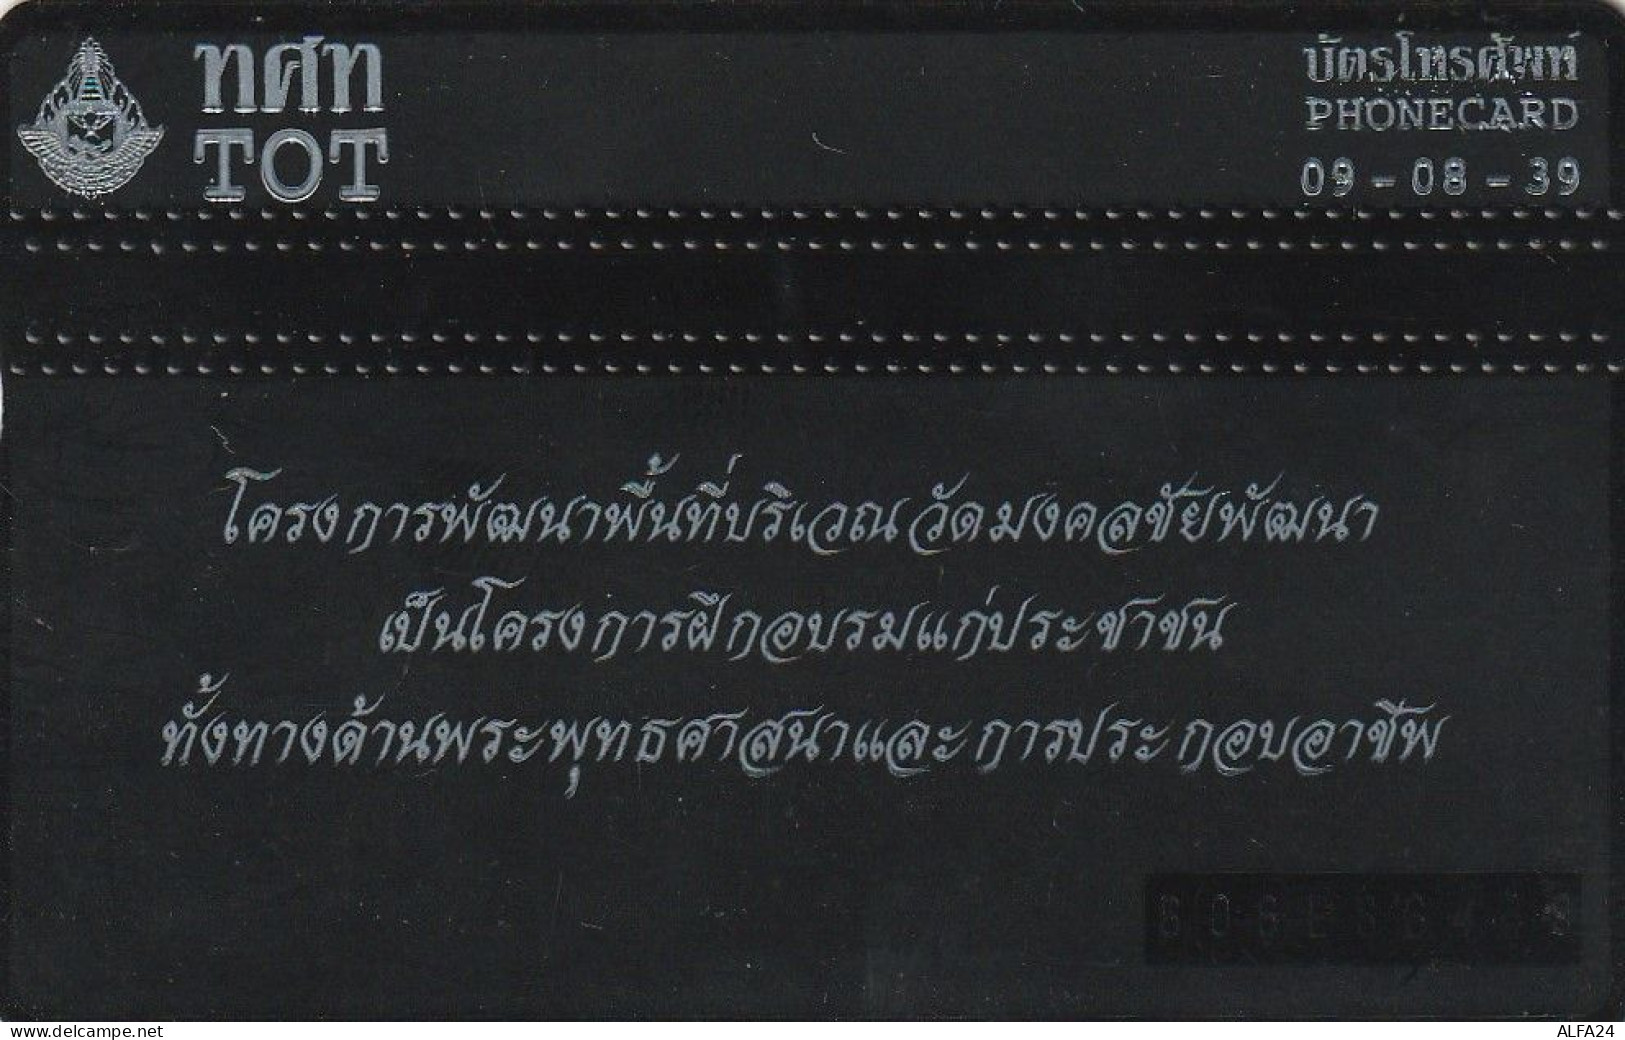 PHONE CARD THAILANDIA  (CZ1218 - Thaïland